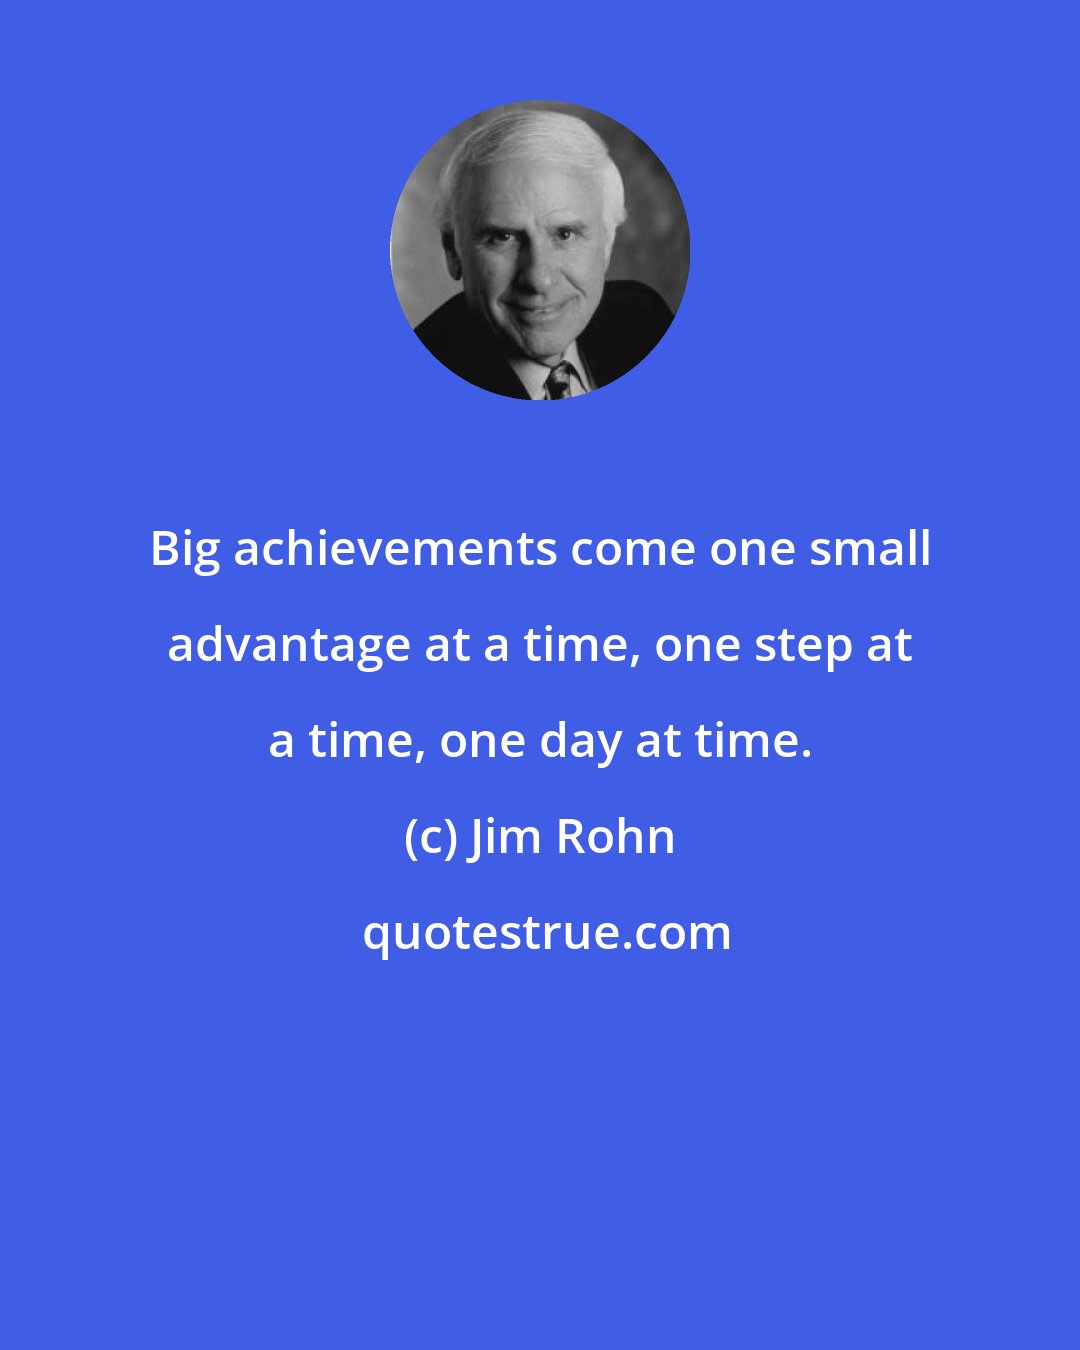 Jim Rohn: Big achievements come one small advantage at a time, one step at a time, one day at time.